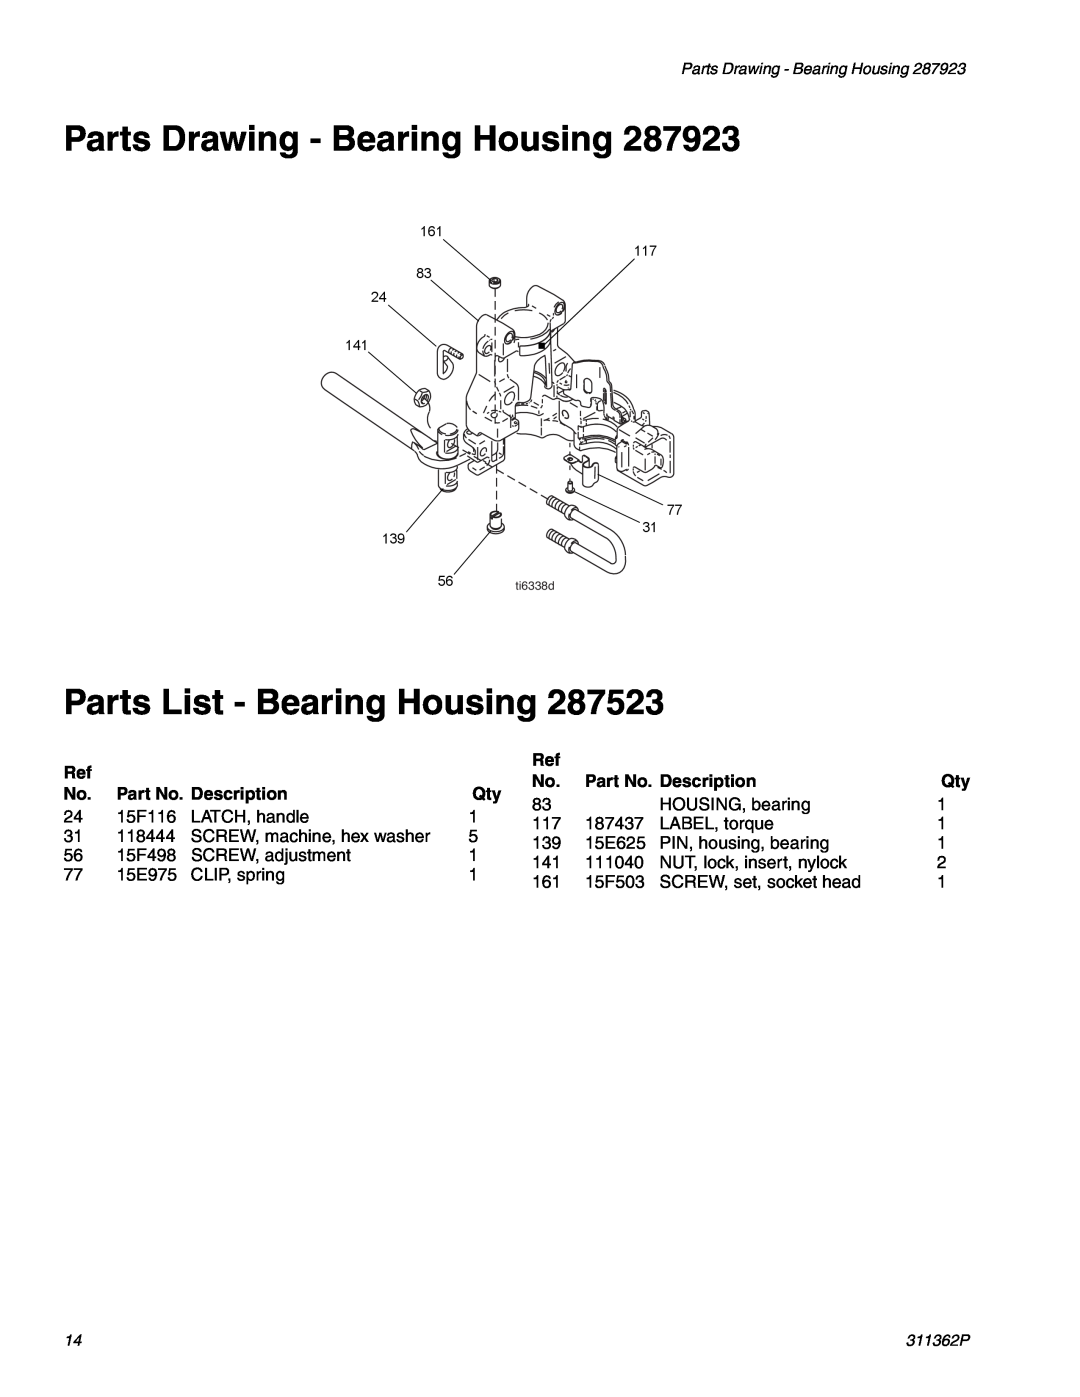 Graco Inc 1095, 1595 manual Parts Drawing - Bearing Housing, Parts List - Bearing Housing, Part No. Description 